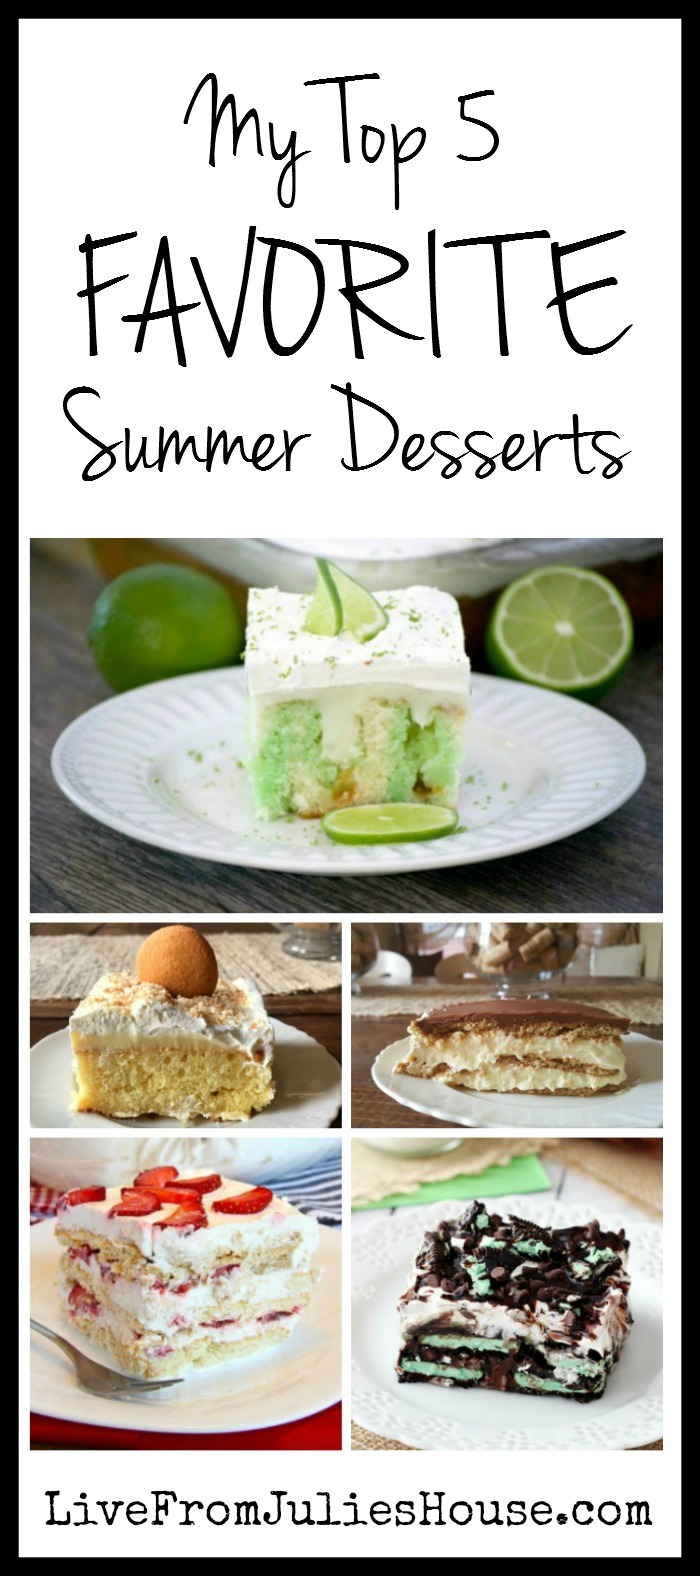 Top 5 Favorite Summer Desserts